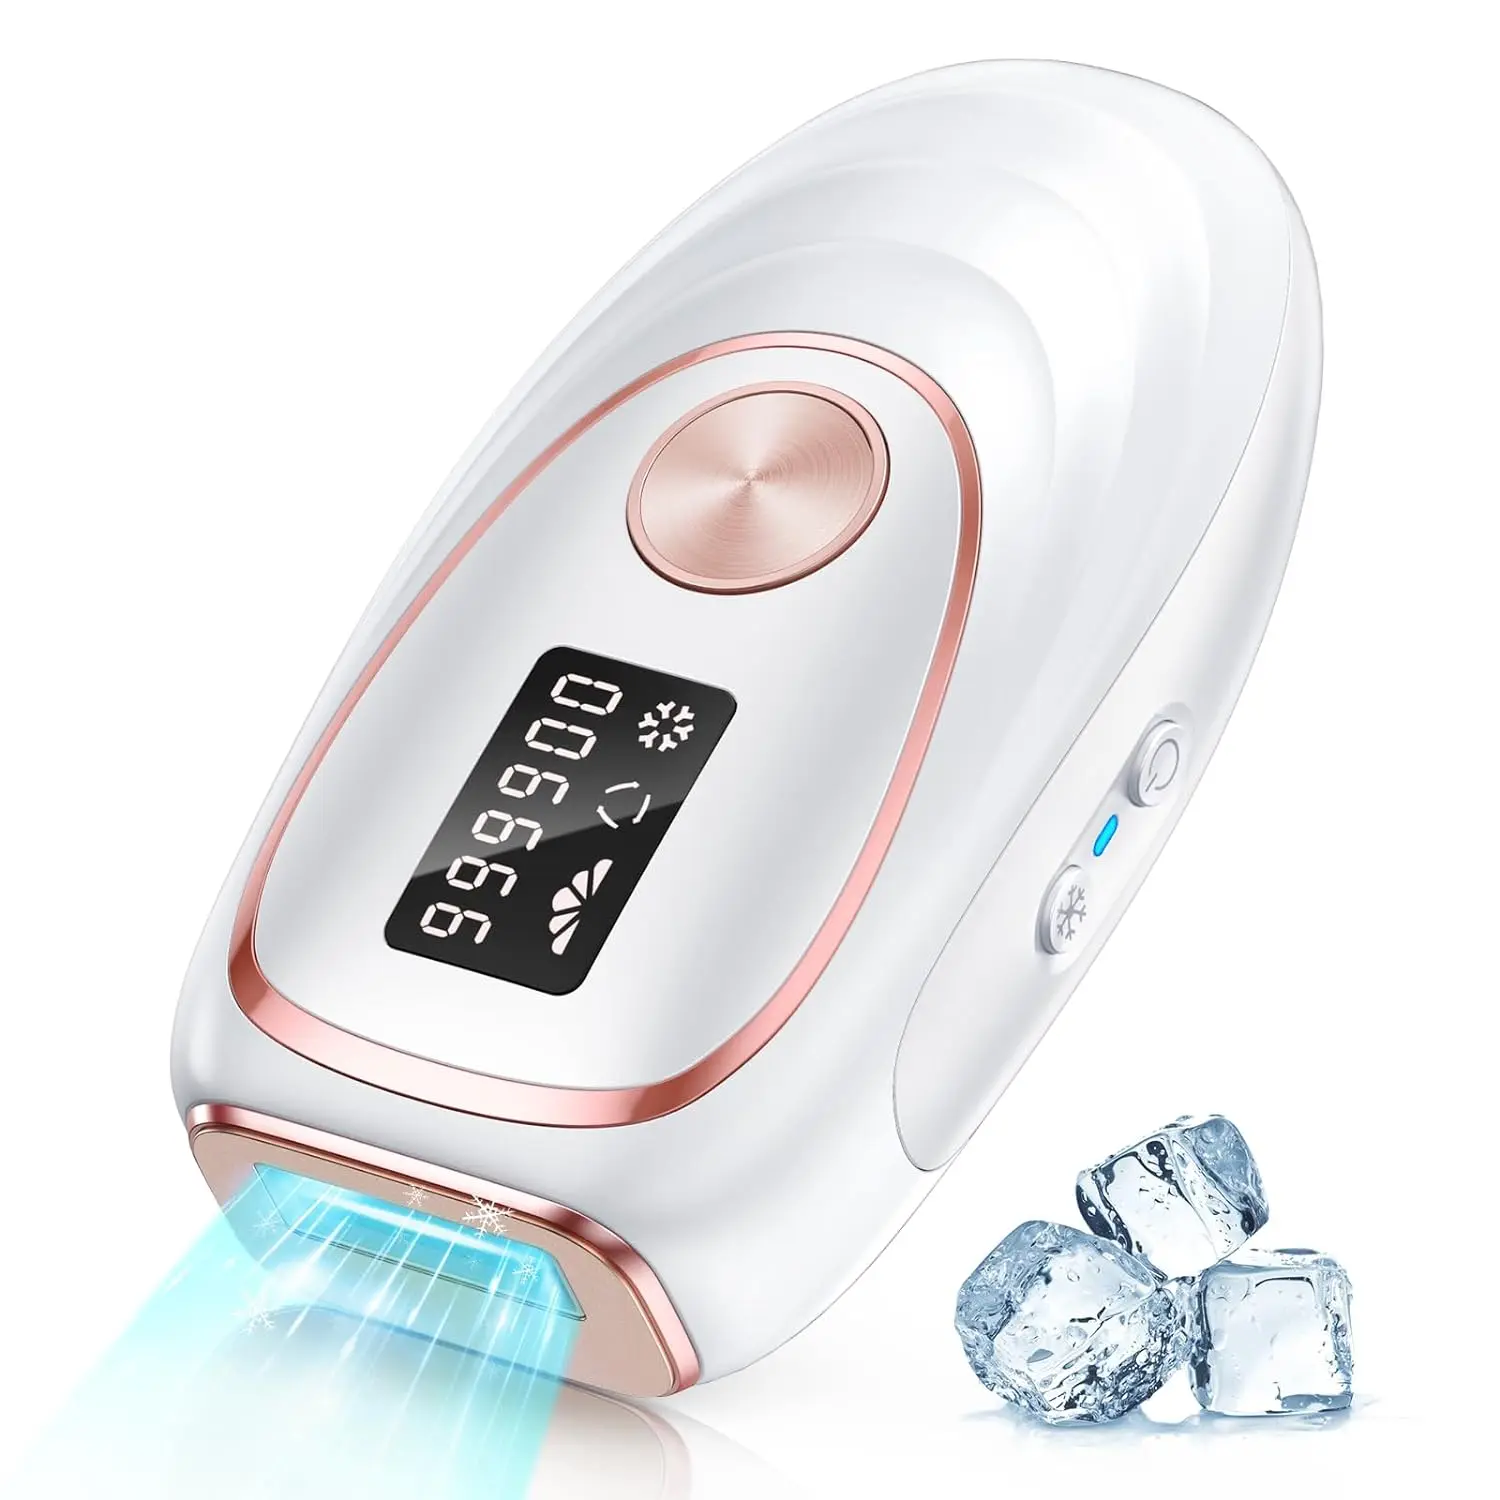 

Лазерный эпилятор для удаления волос IPL с охлаждением от льда для мужчин и женщин, усовершенствованное устройство для удаления волос на всем теле, 999900 вспышек, 5 уровней постоянного действия